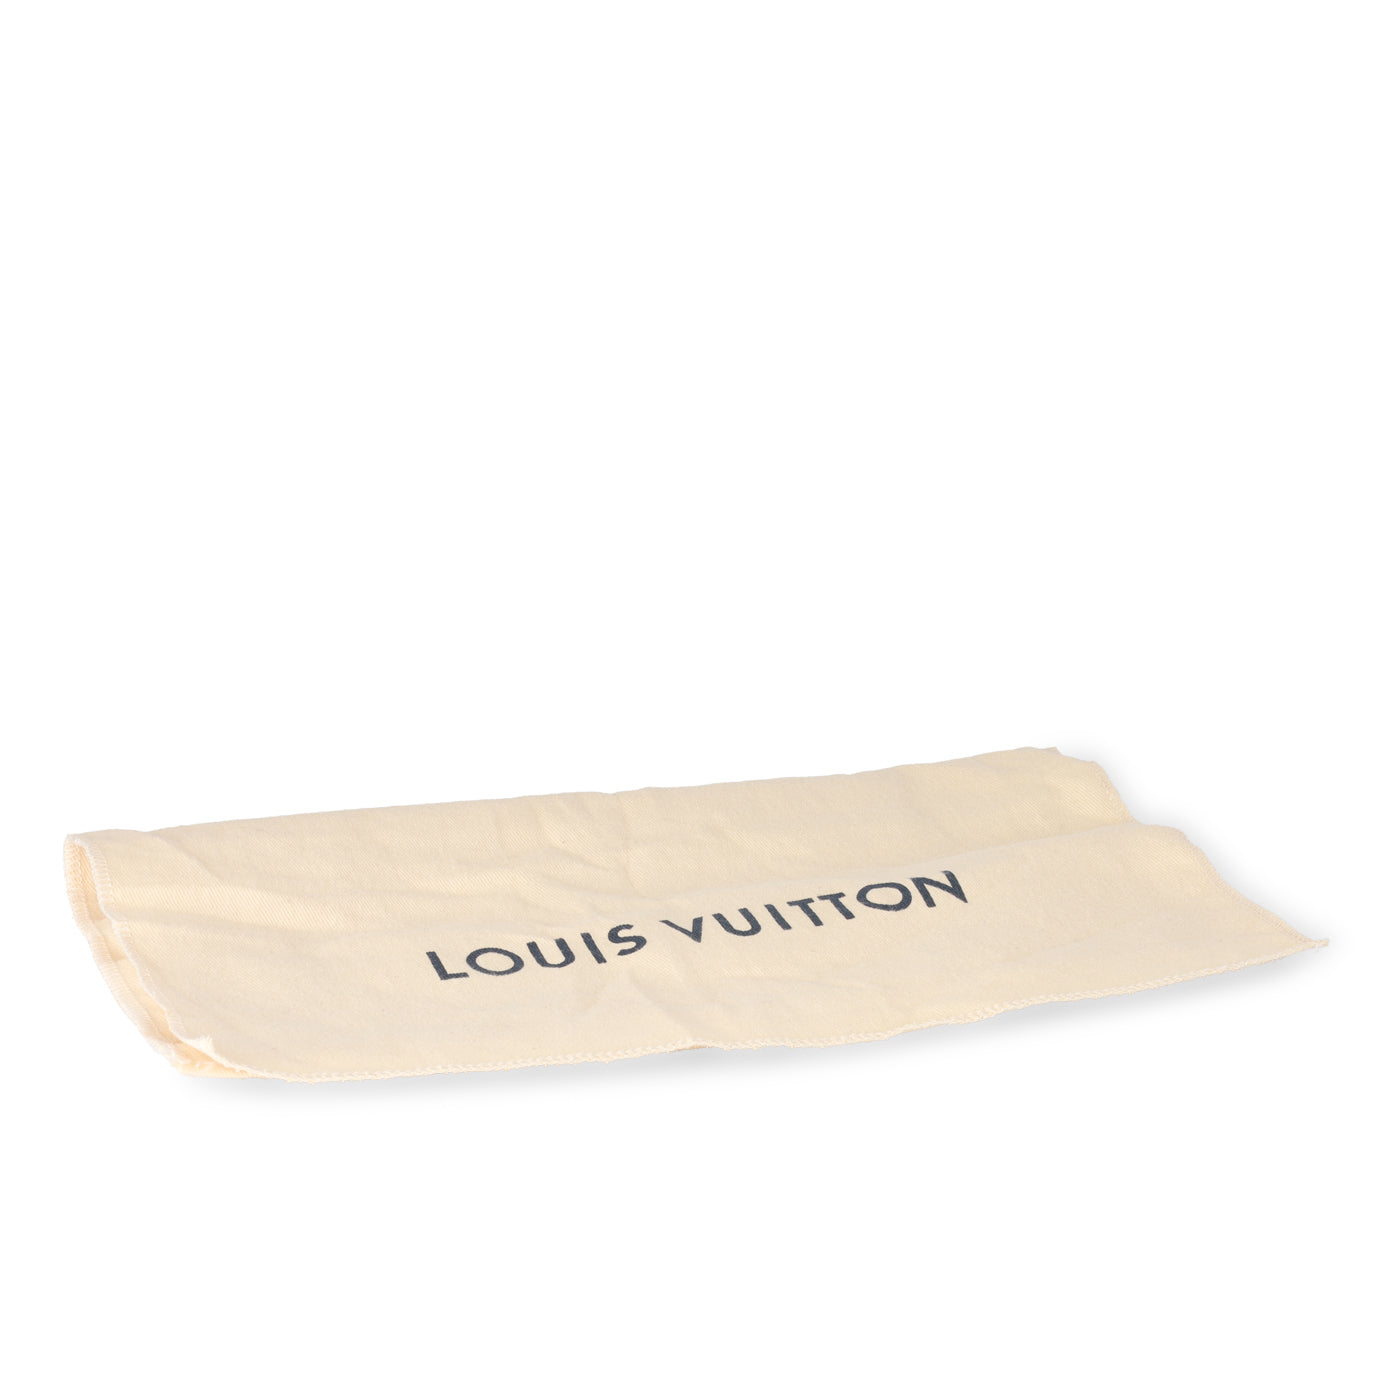 Louis Vuitton Light Blue Leather Articles de Voyage Zippy Wallet Zip Around  861160